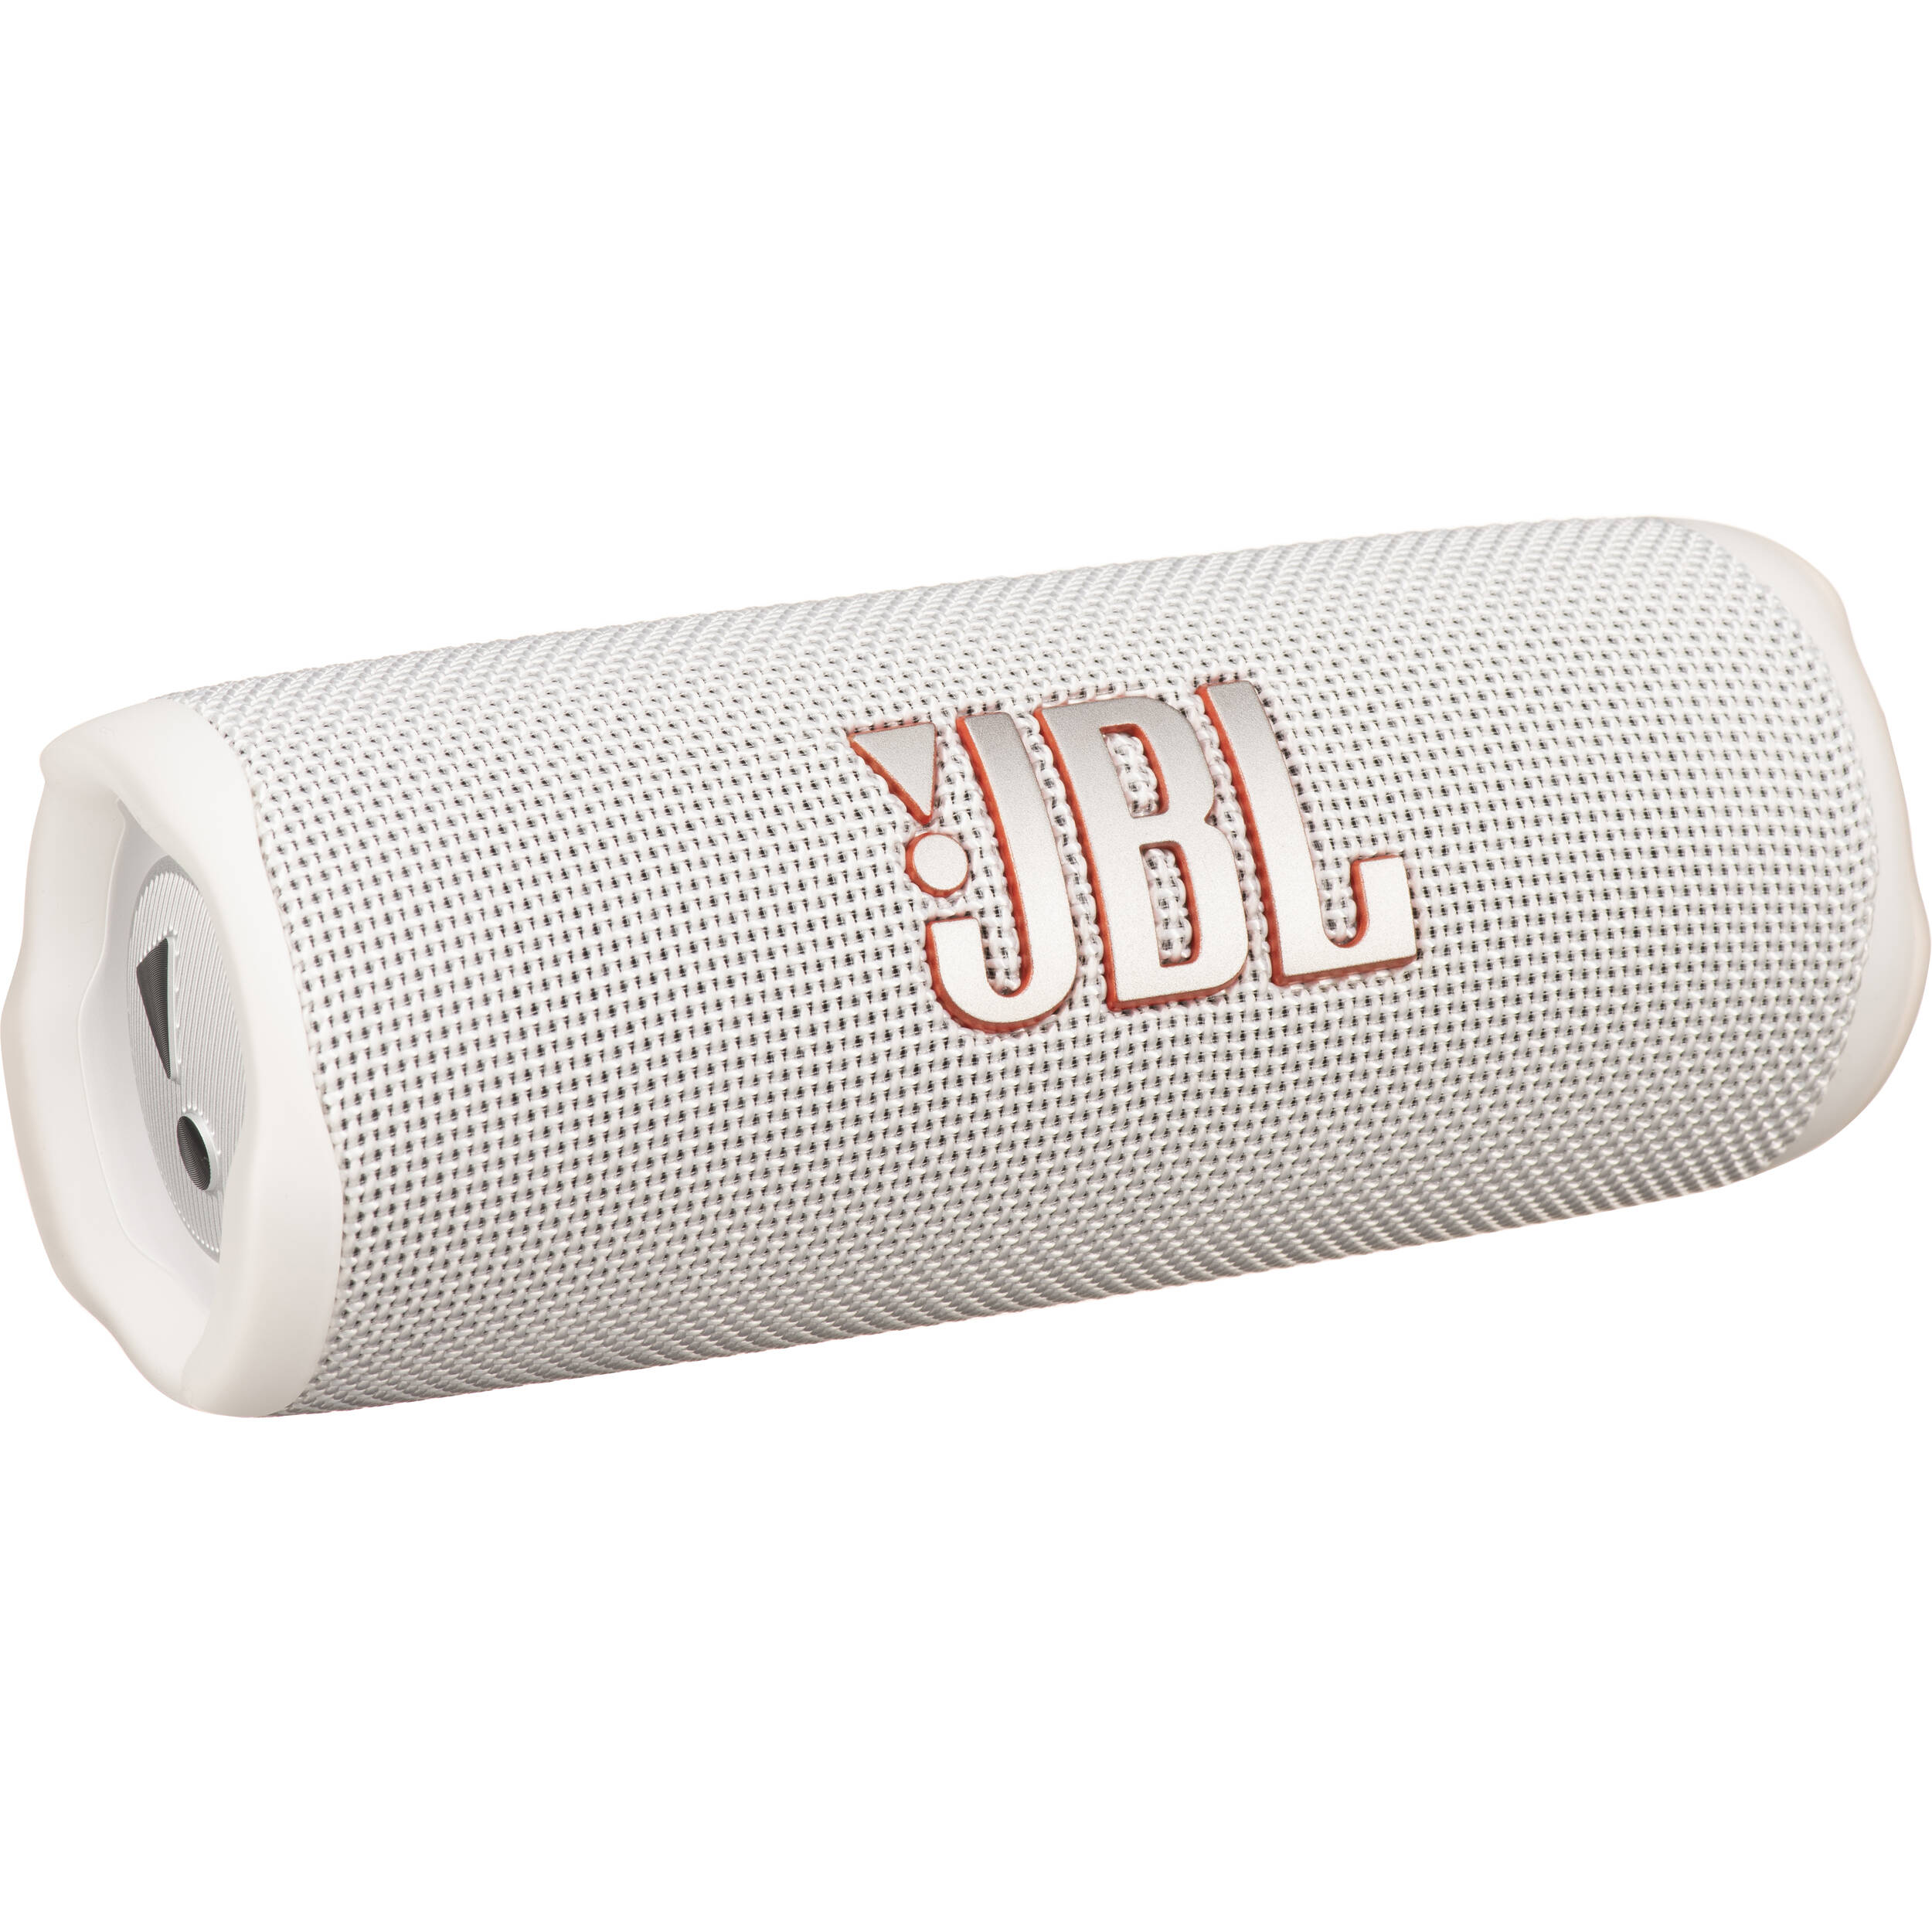 Altavoz Bluetooth JBL Flip 5 Blanco - Altavoces Bluetooth - Los mejores  precios